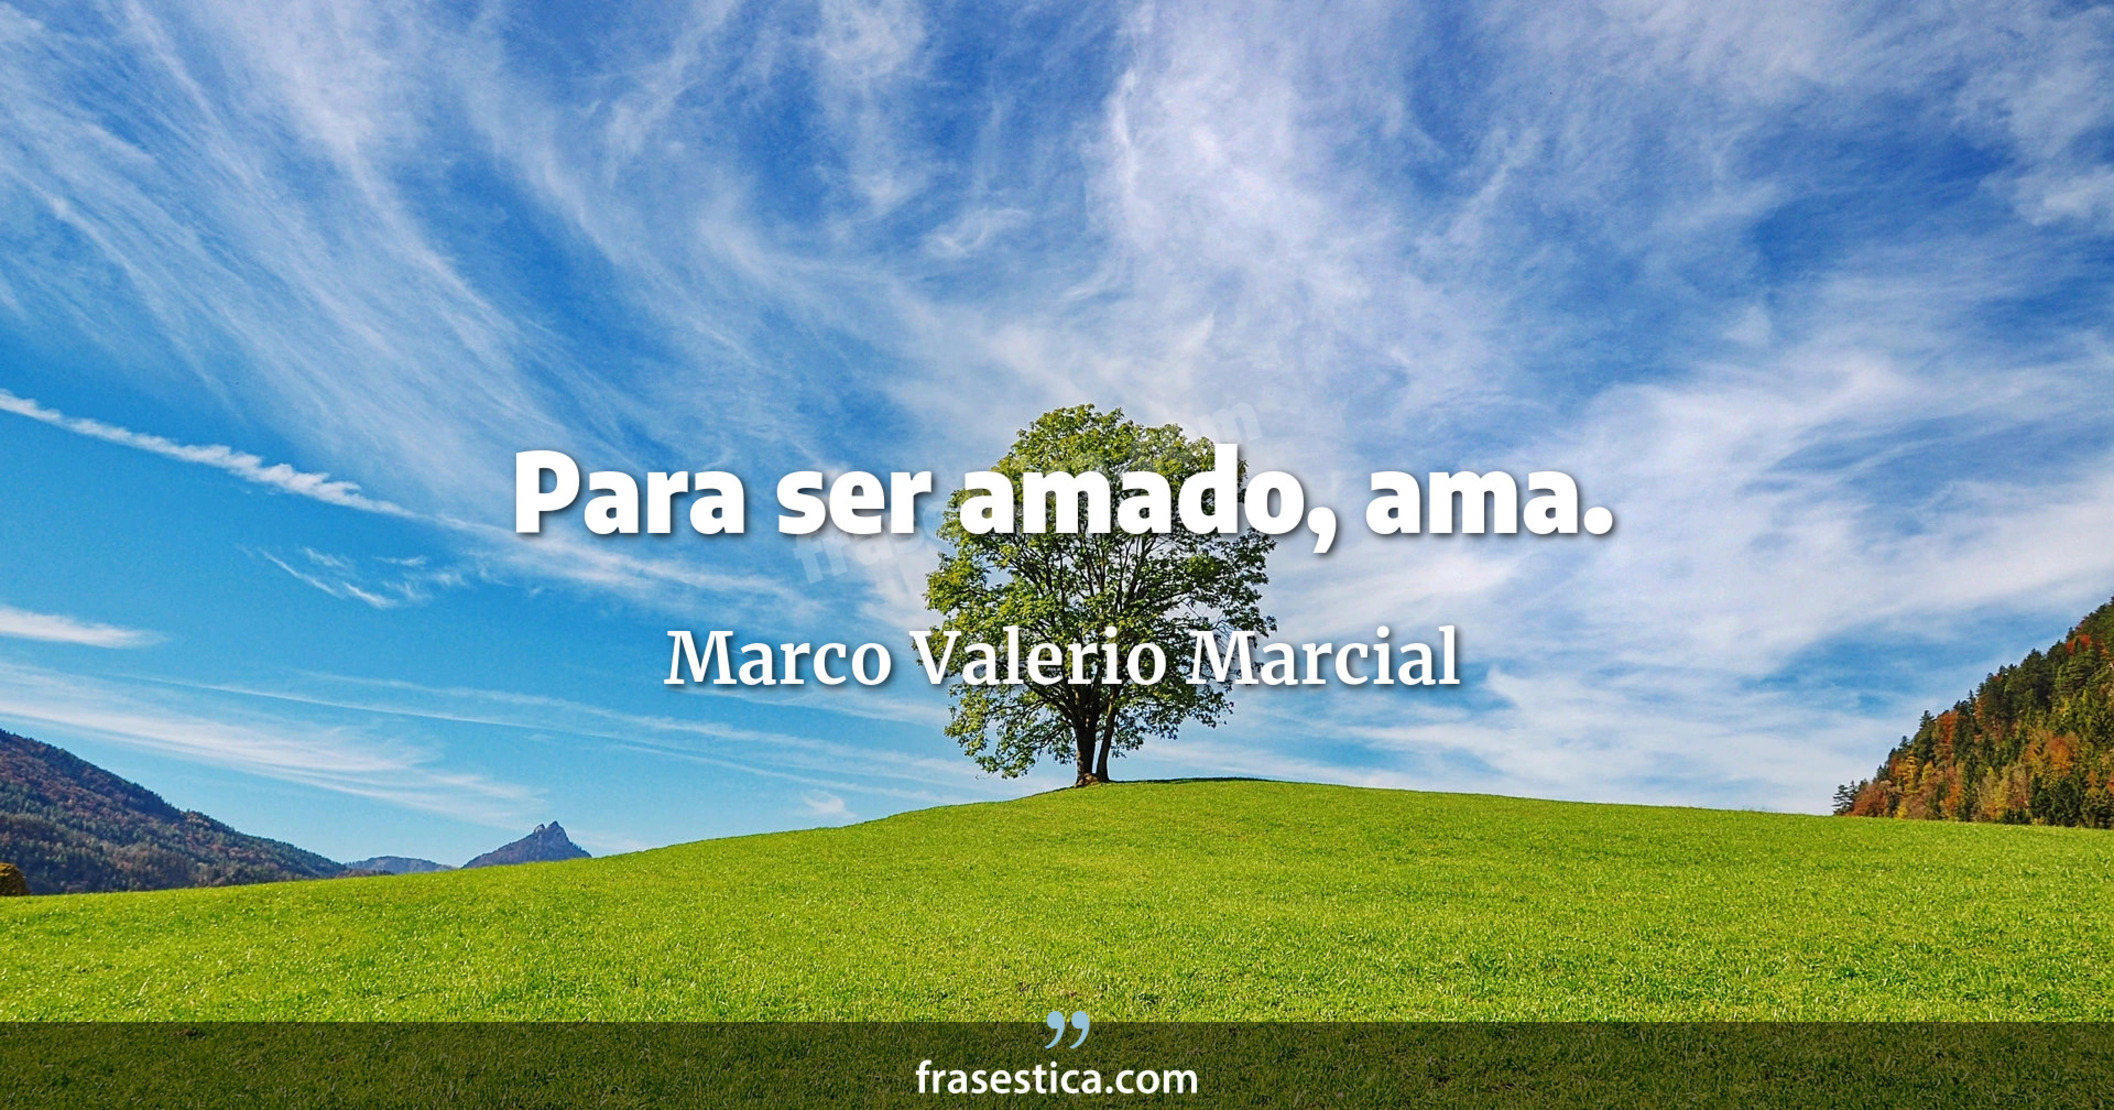 Para ser amado, ama. - Marco Valerio Marcial